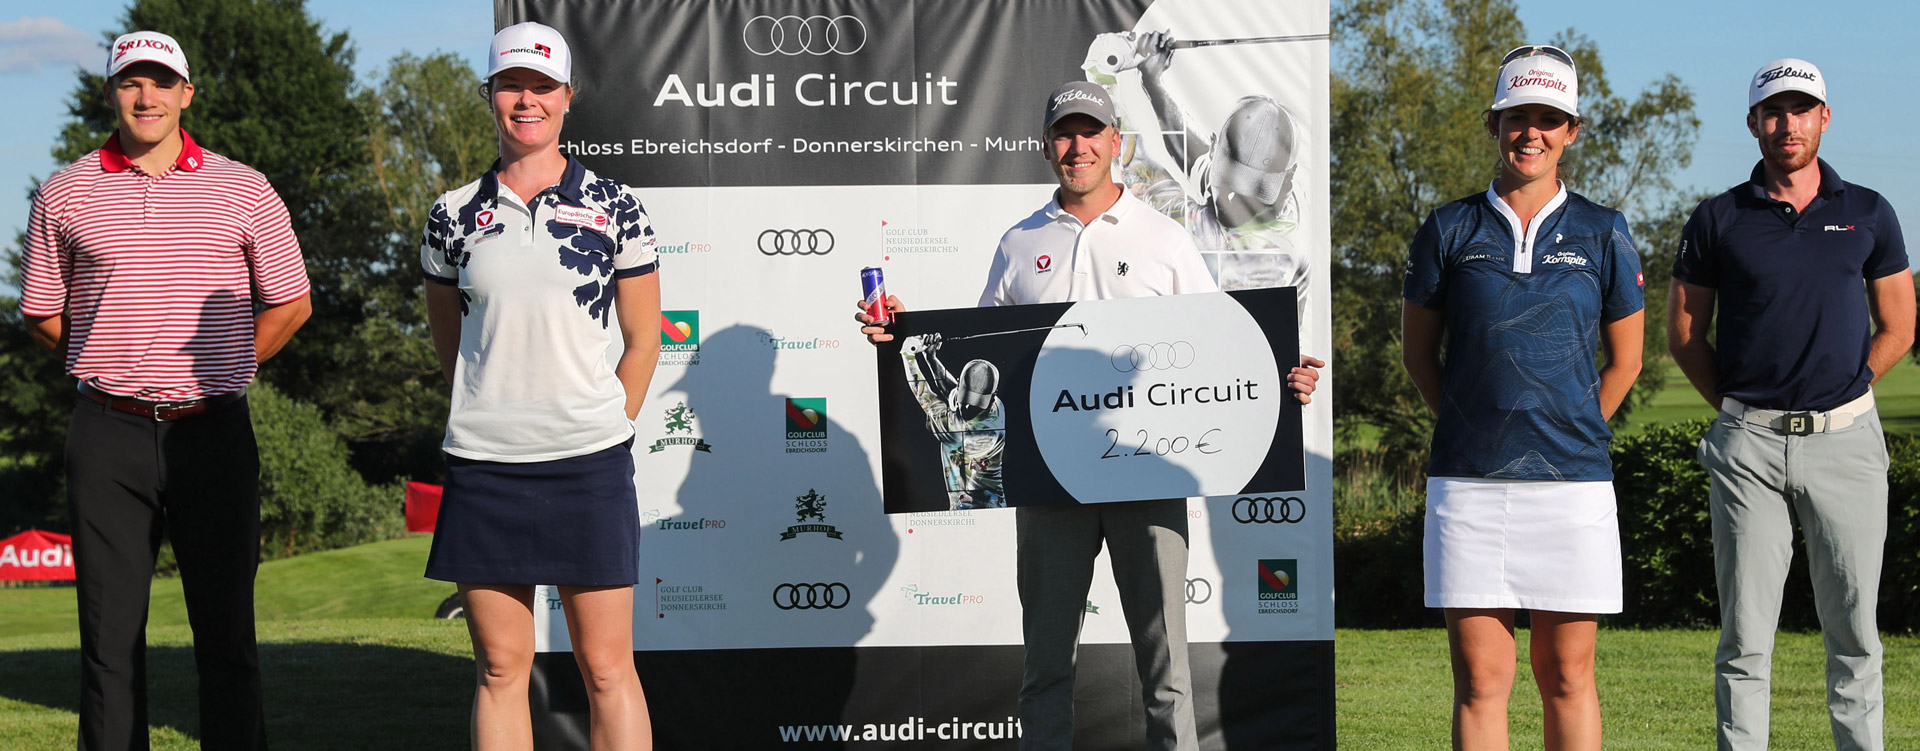 Audi Circuit geht in die zweite Runde